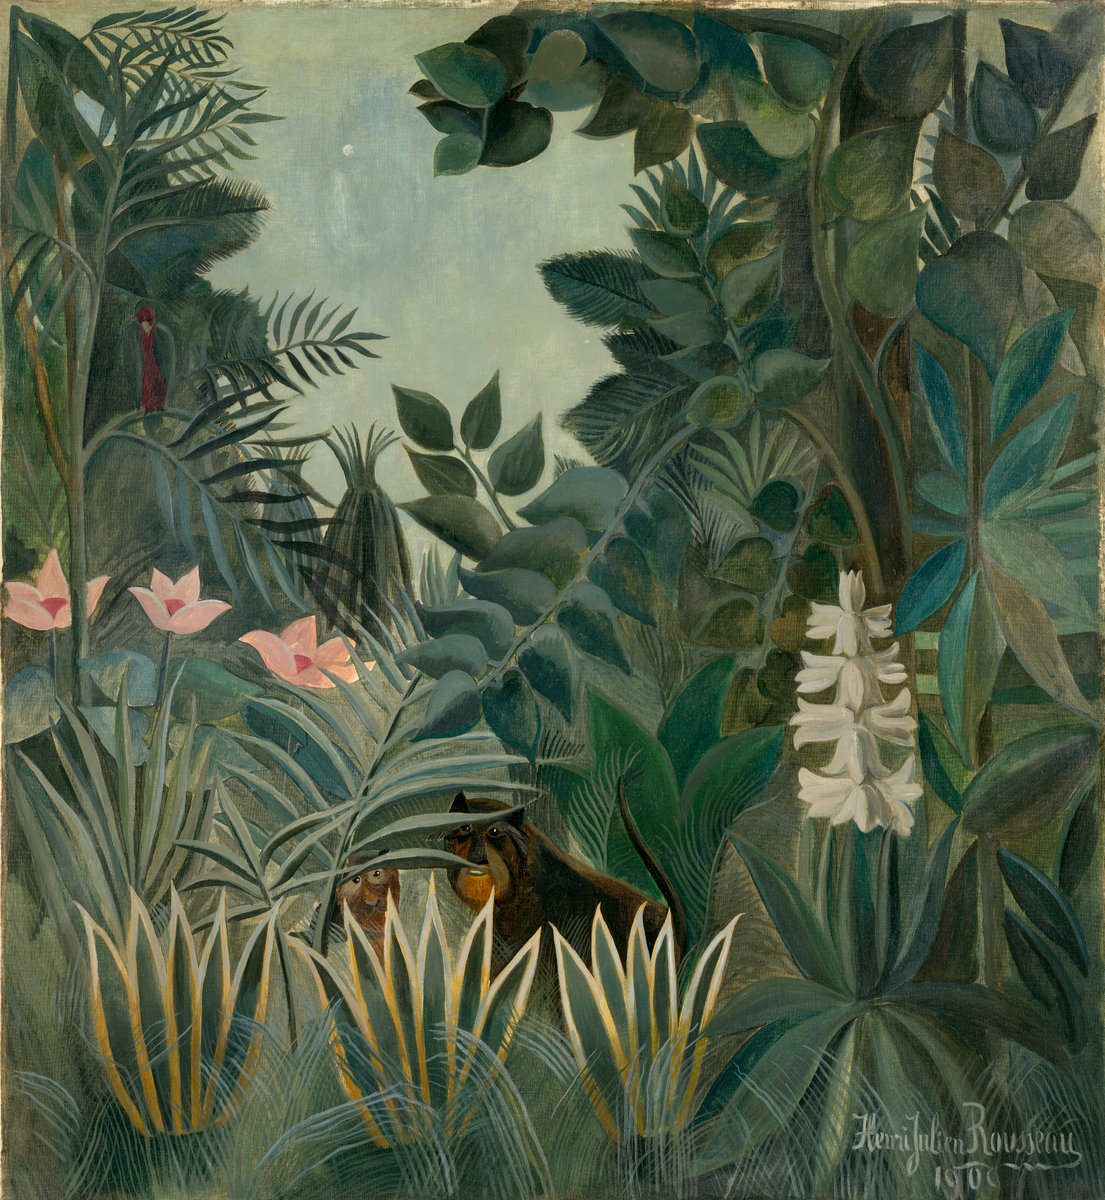 イチジク. 17 ● 熱帯雨林, アンリ ・ ルソー, 1909. 国立美術館, ワシントン. チェスター デール コレクション.